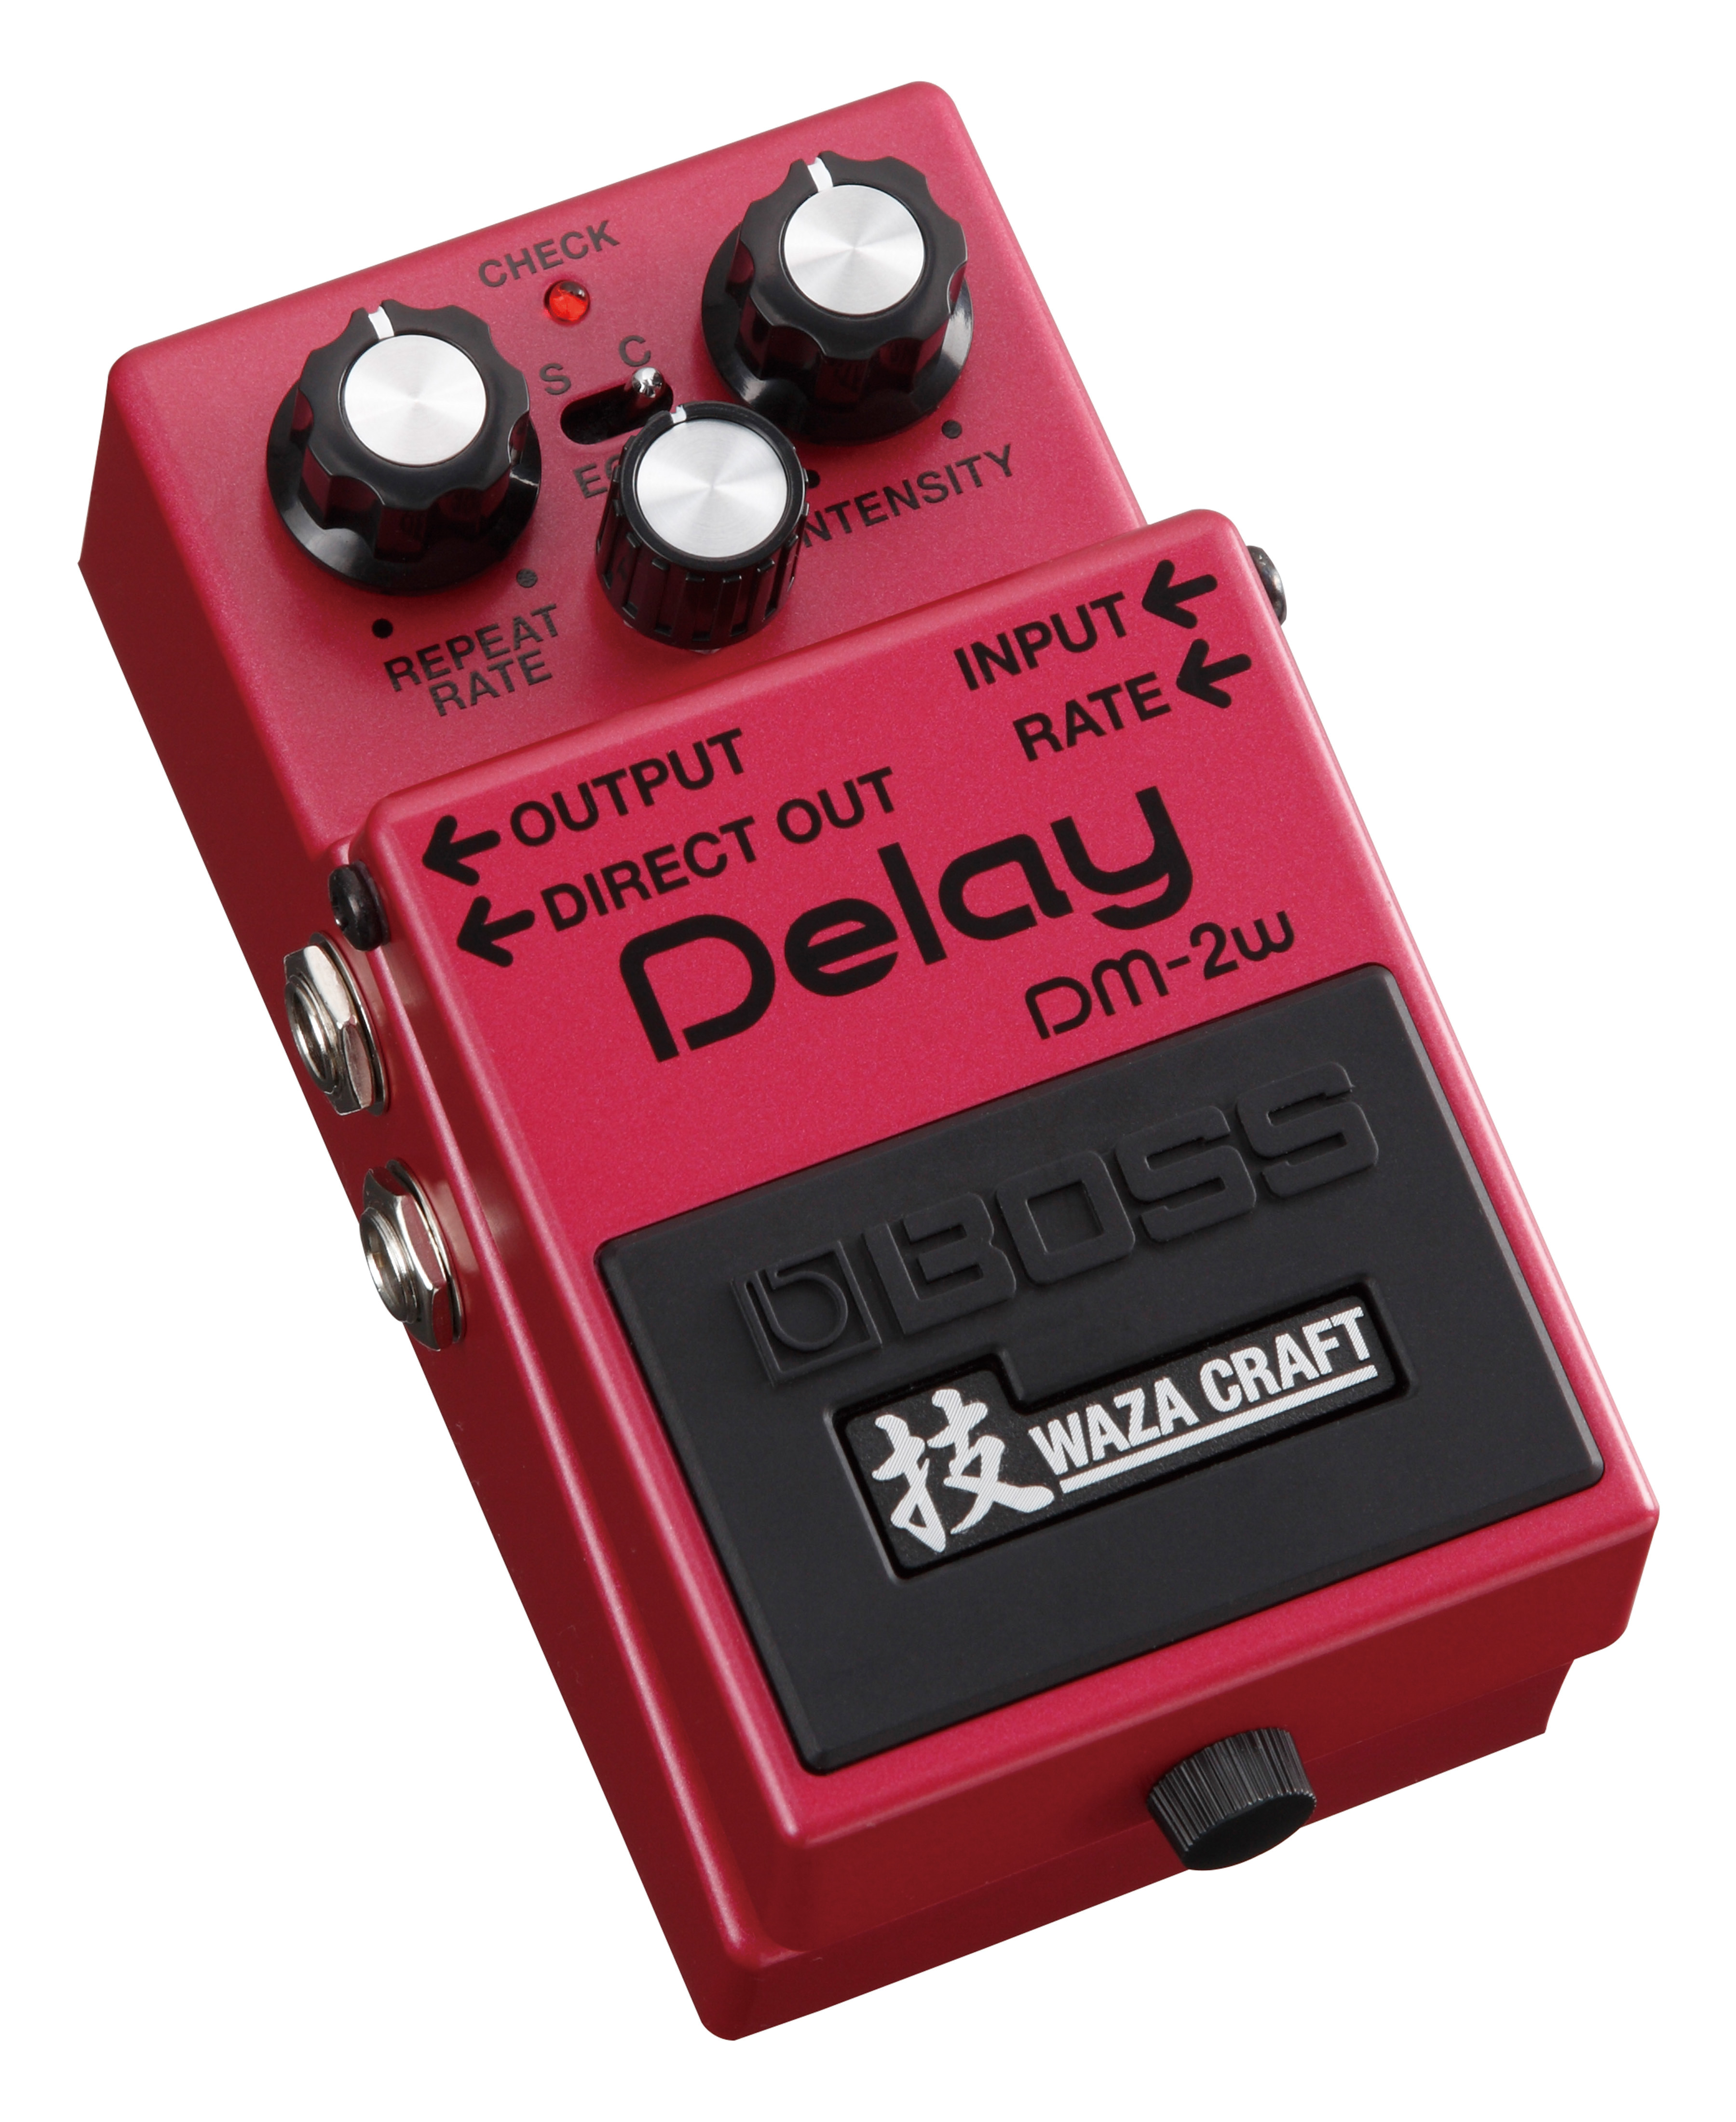 Boss Dm2w Delay Waza Craft - Reverb, delay & echo effect pedal - Variation 1